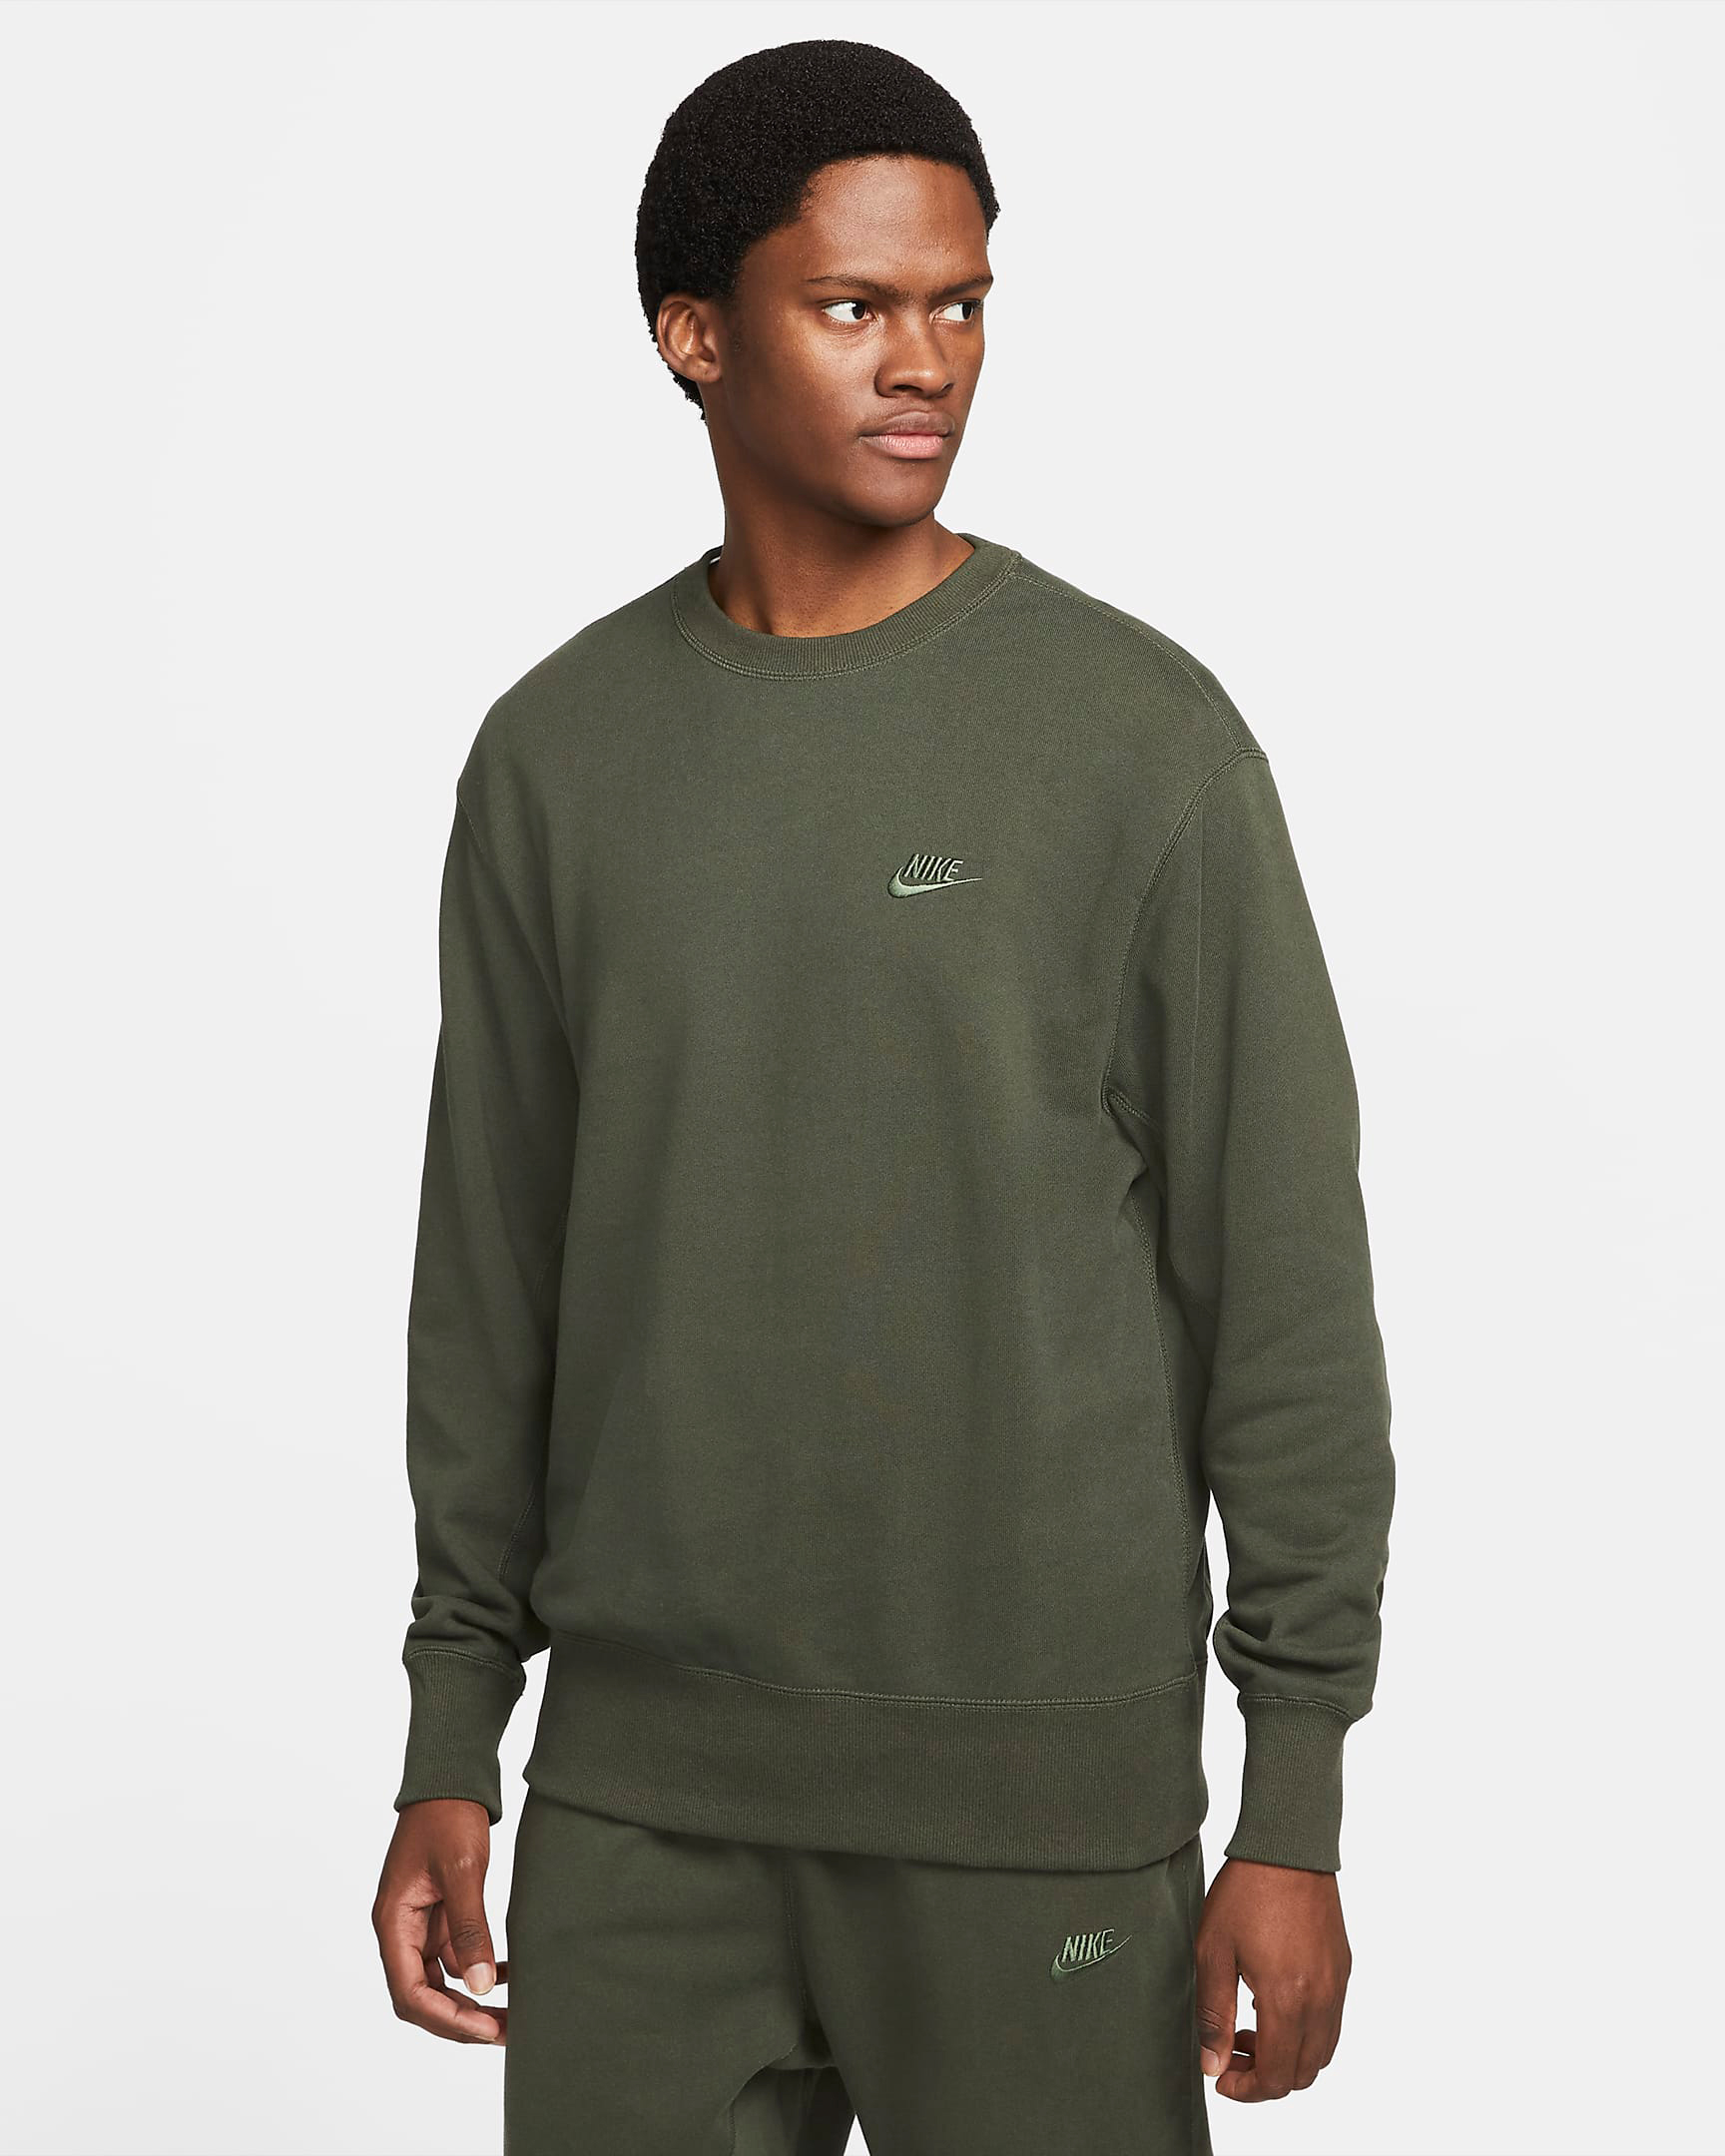 nike-sequoia-classic-fleece-crew-sweatshirt